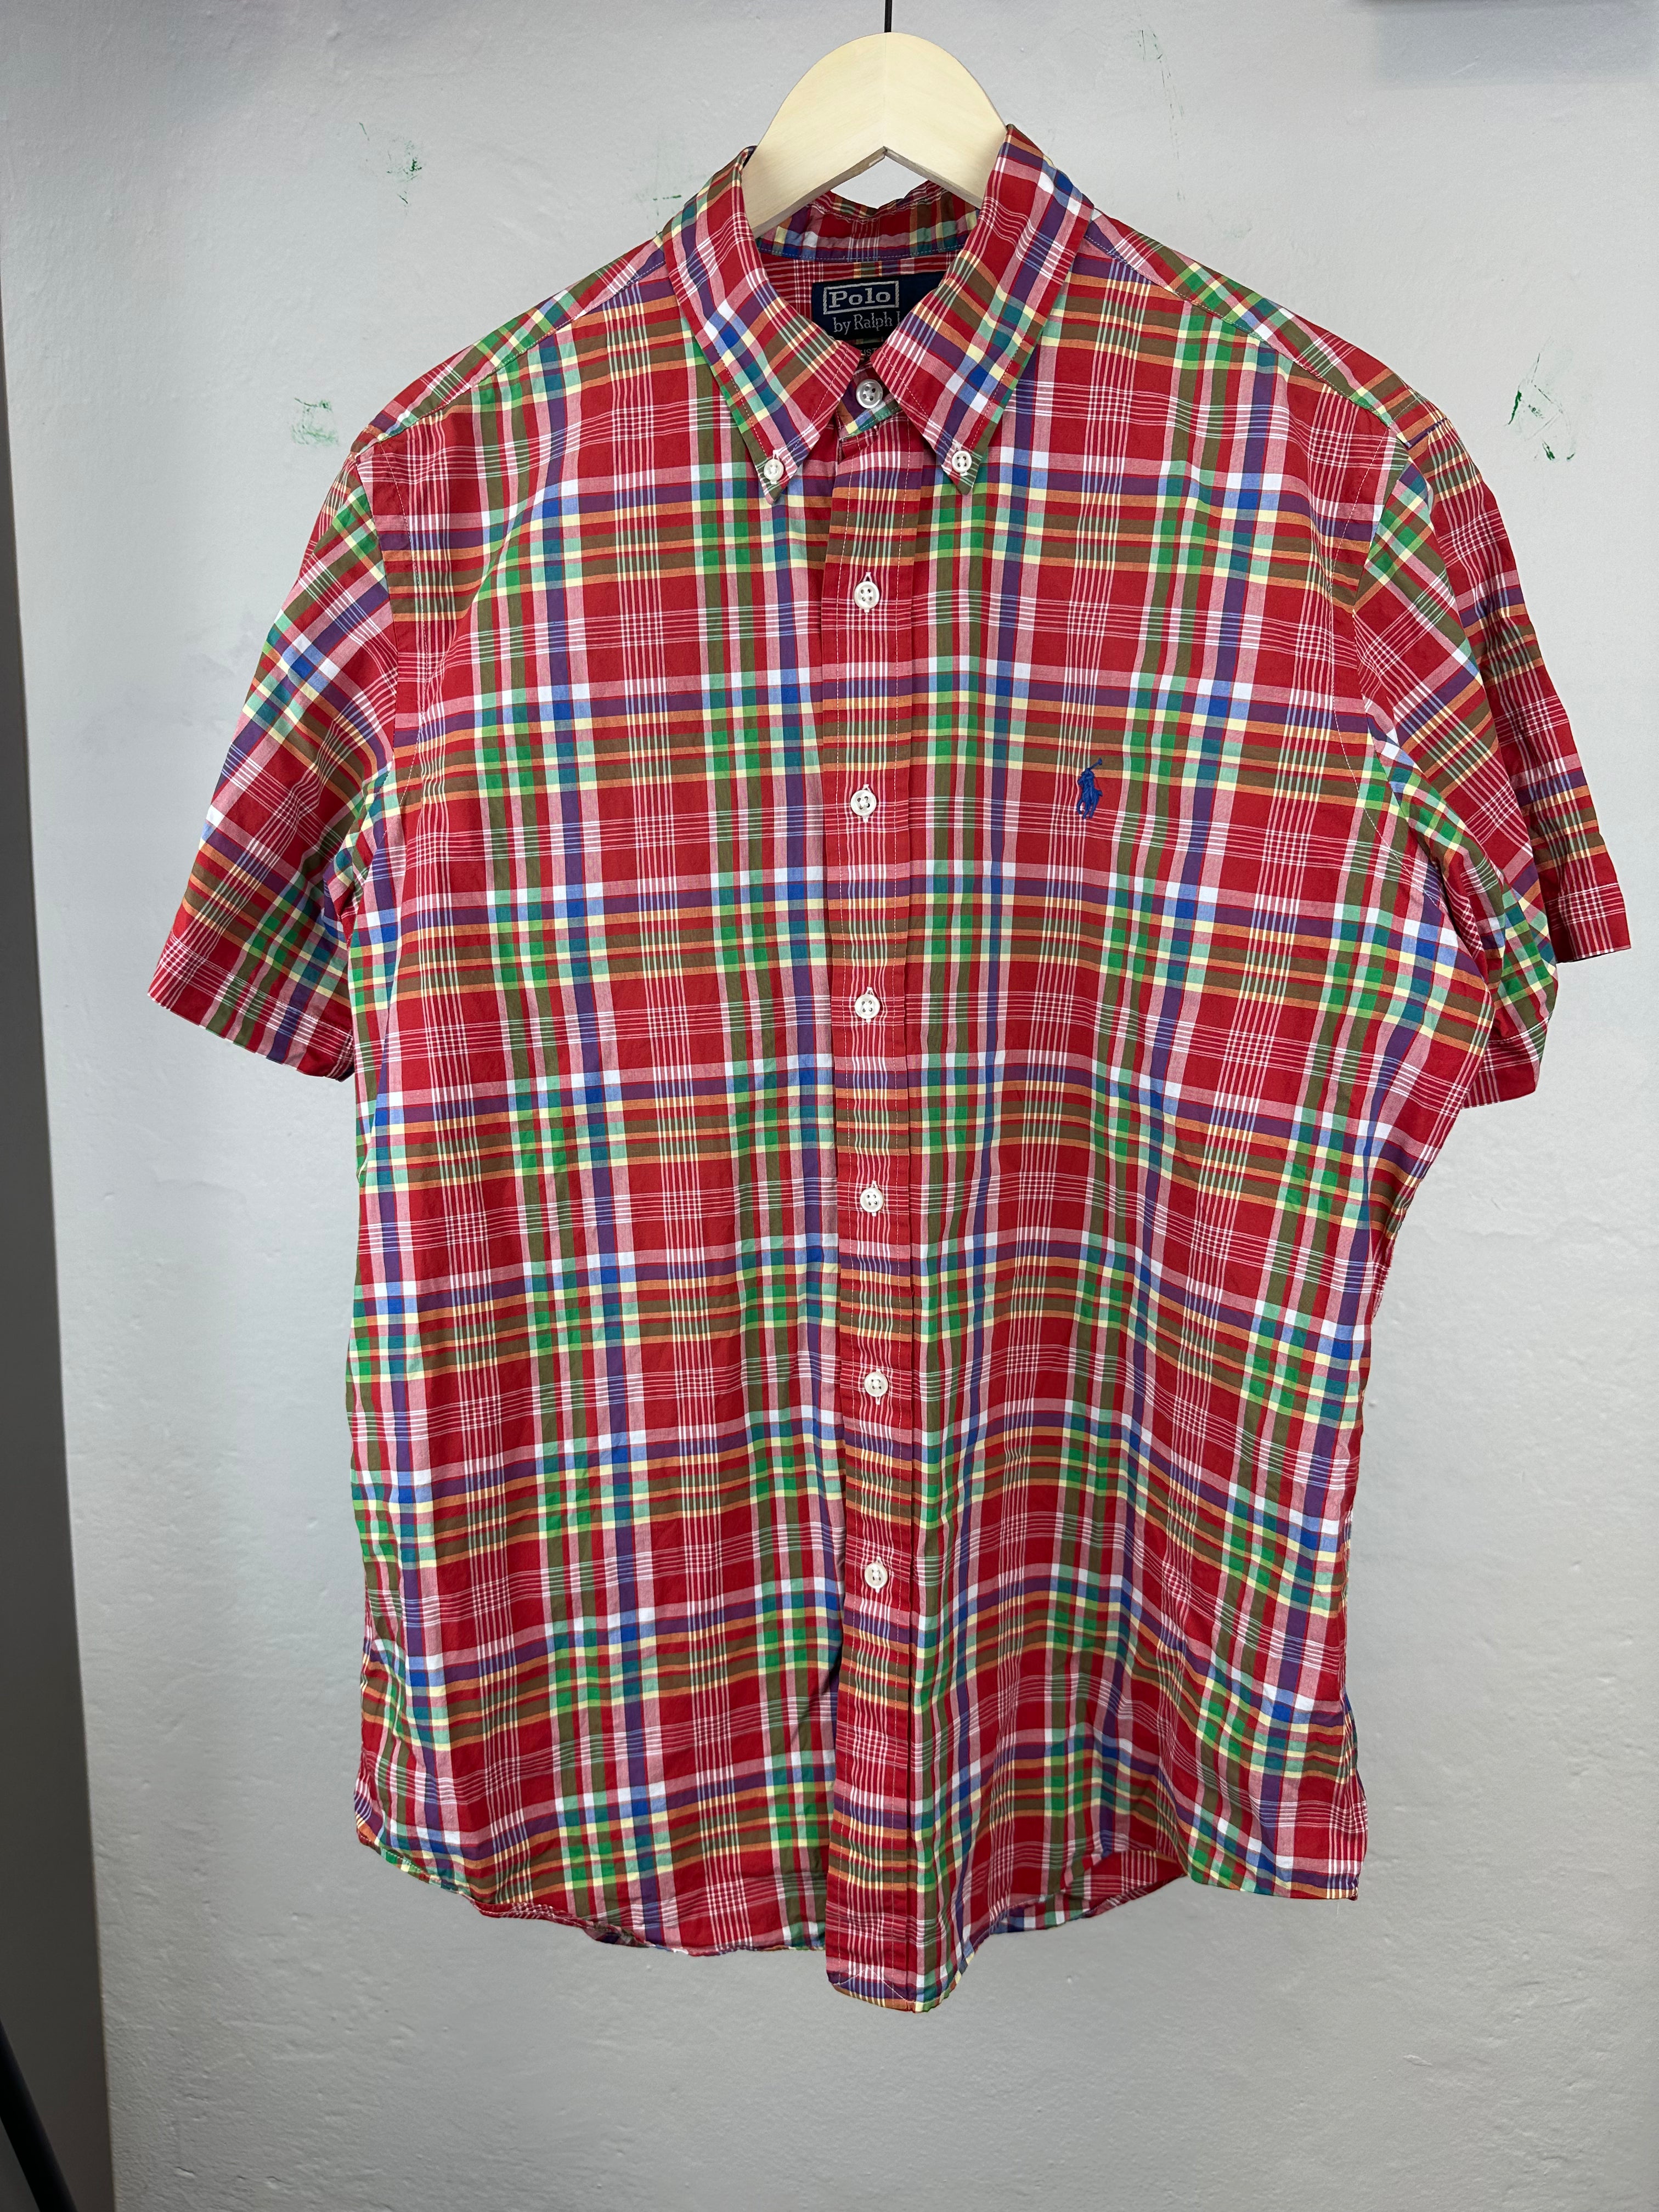 Vintage Polo Ralph Lauren Shirt - size L